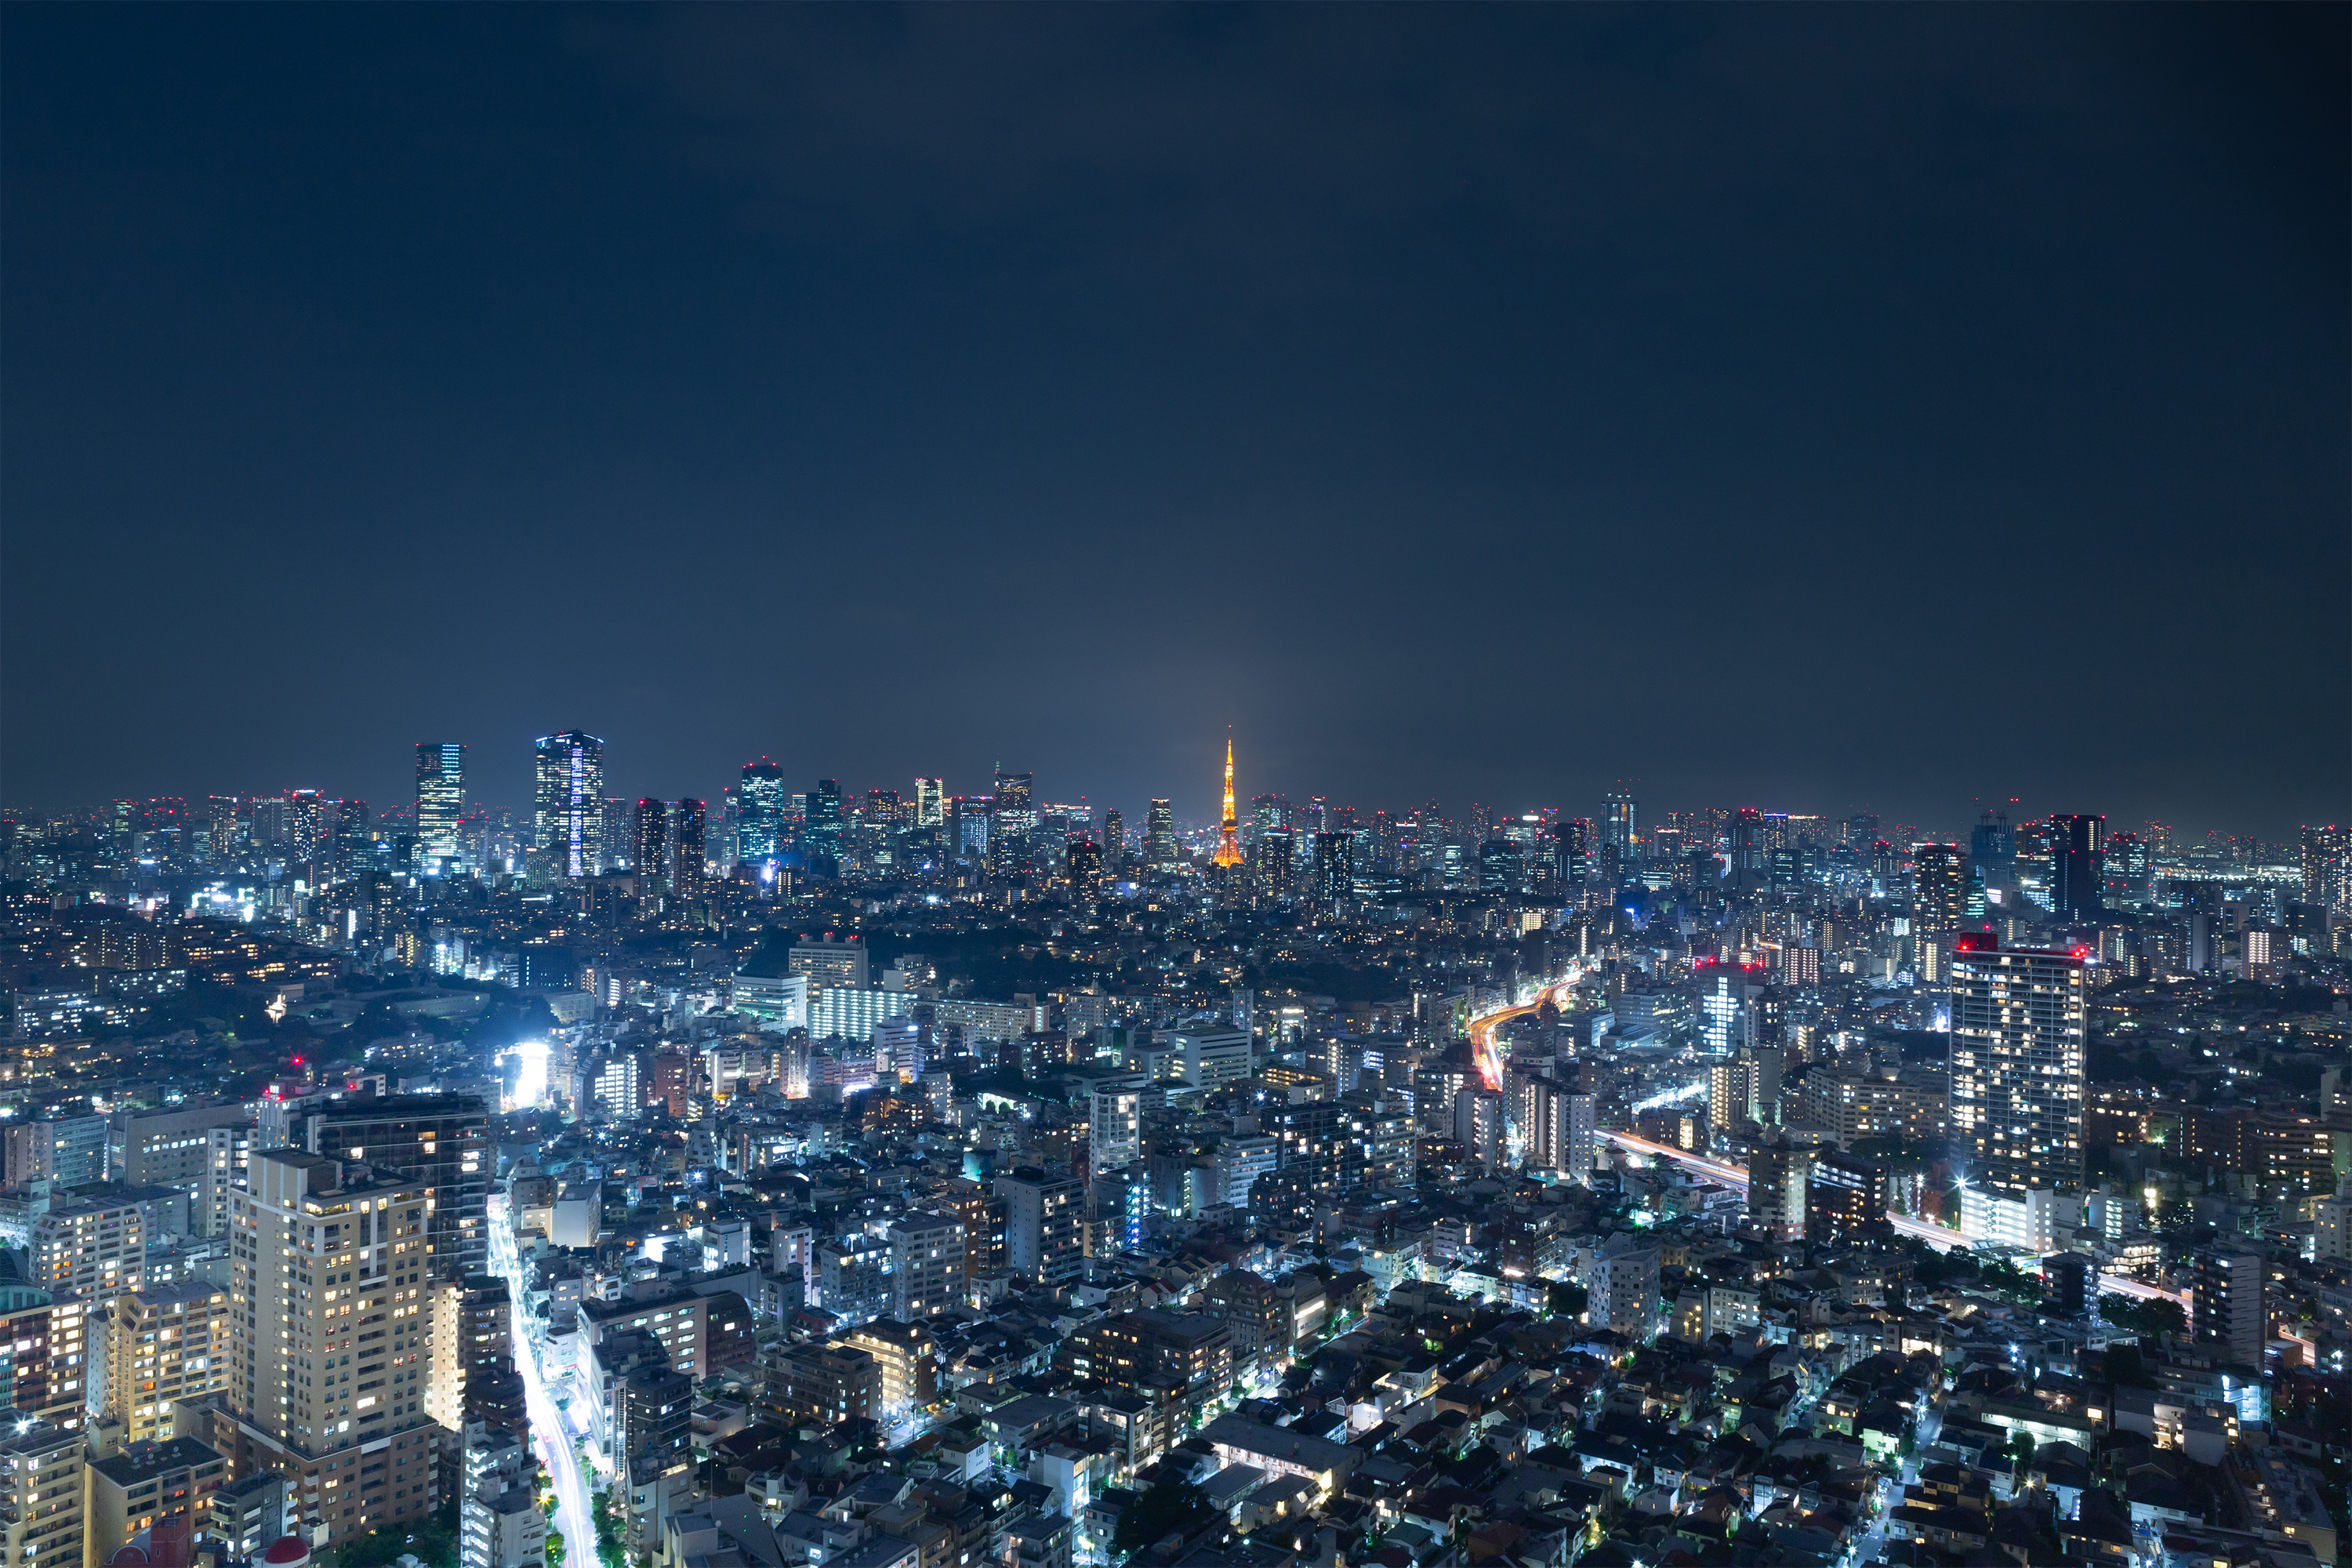 東京タワーと夜景02 無料の高画質フリー写真素材 イメージズラボ